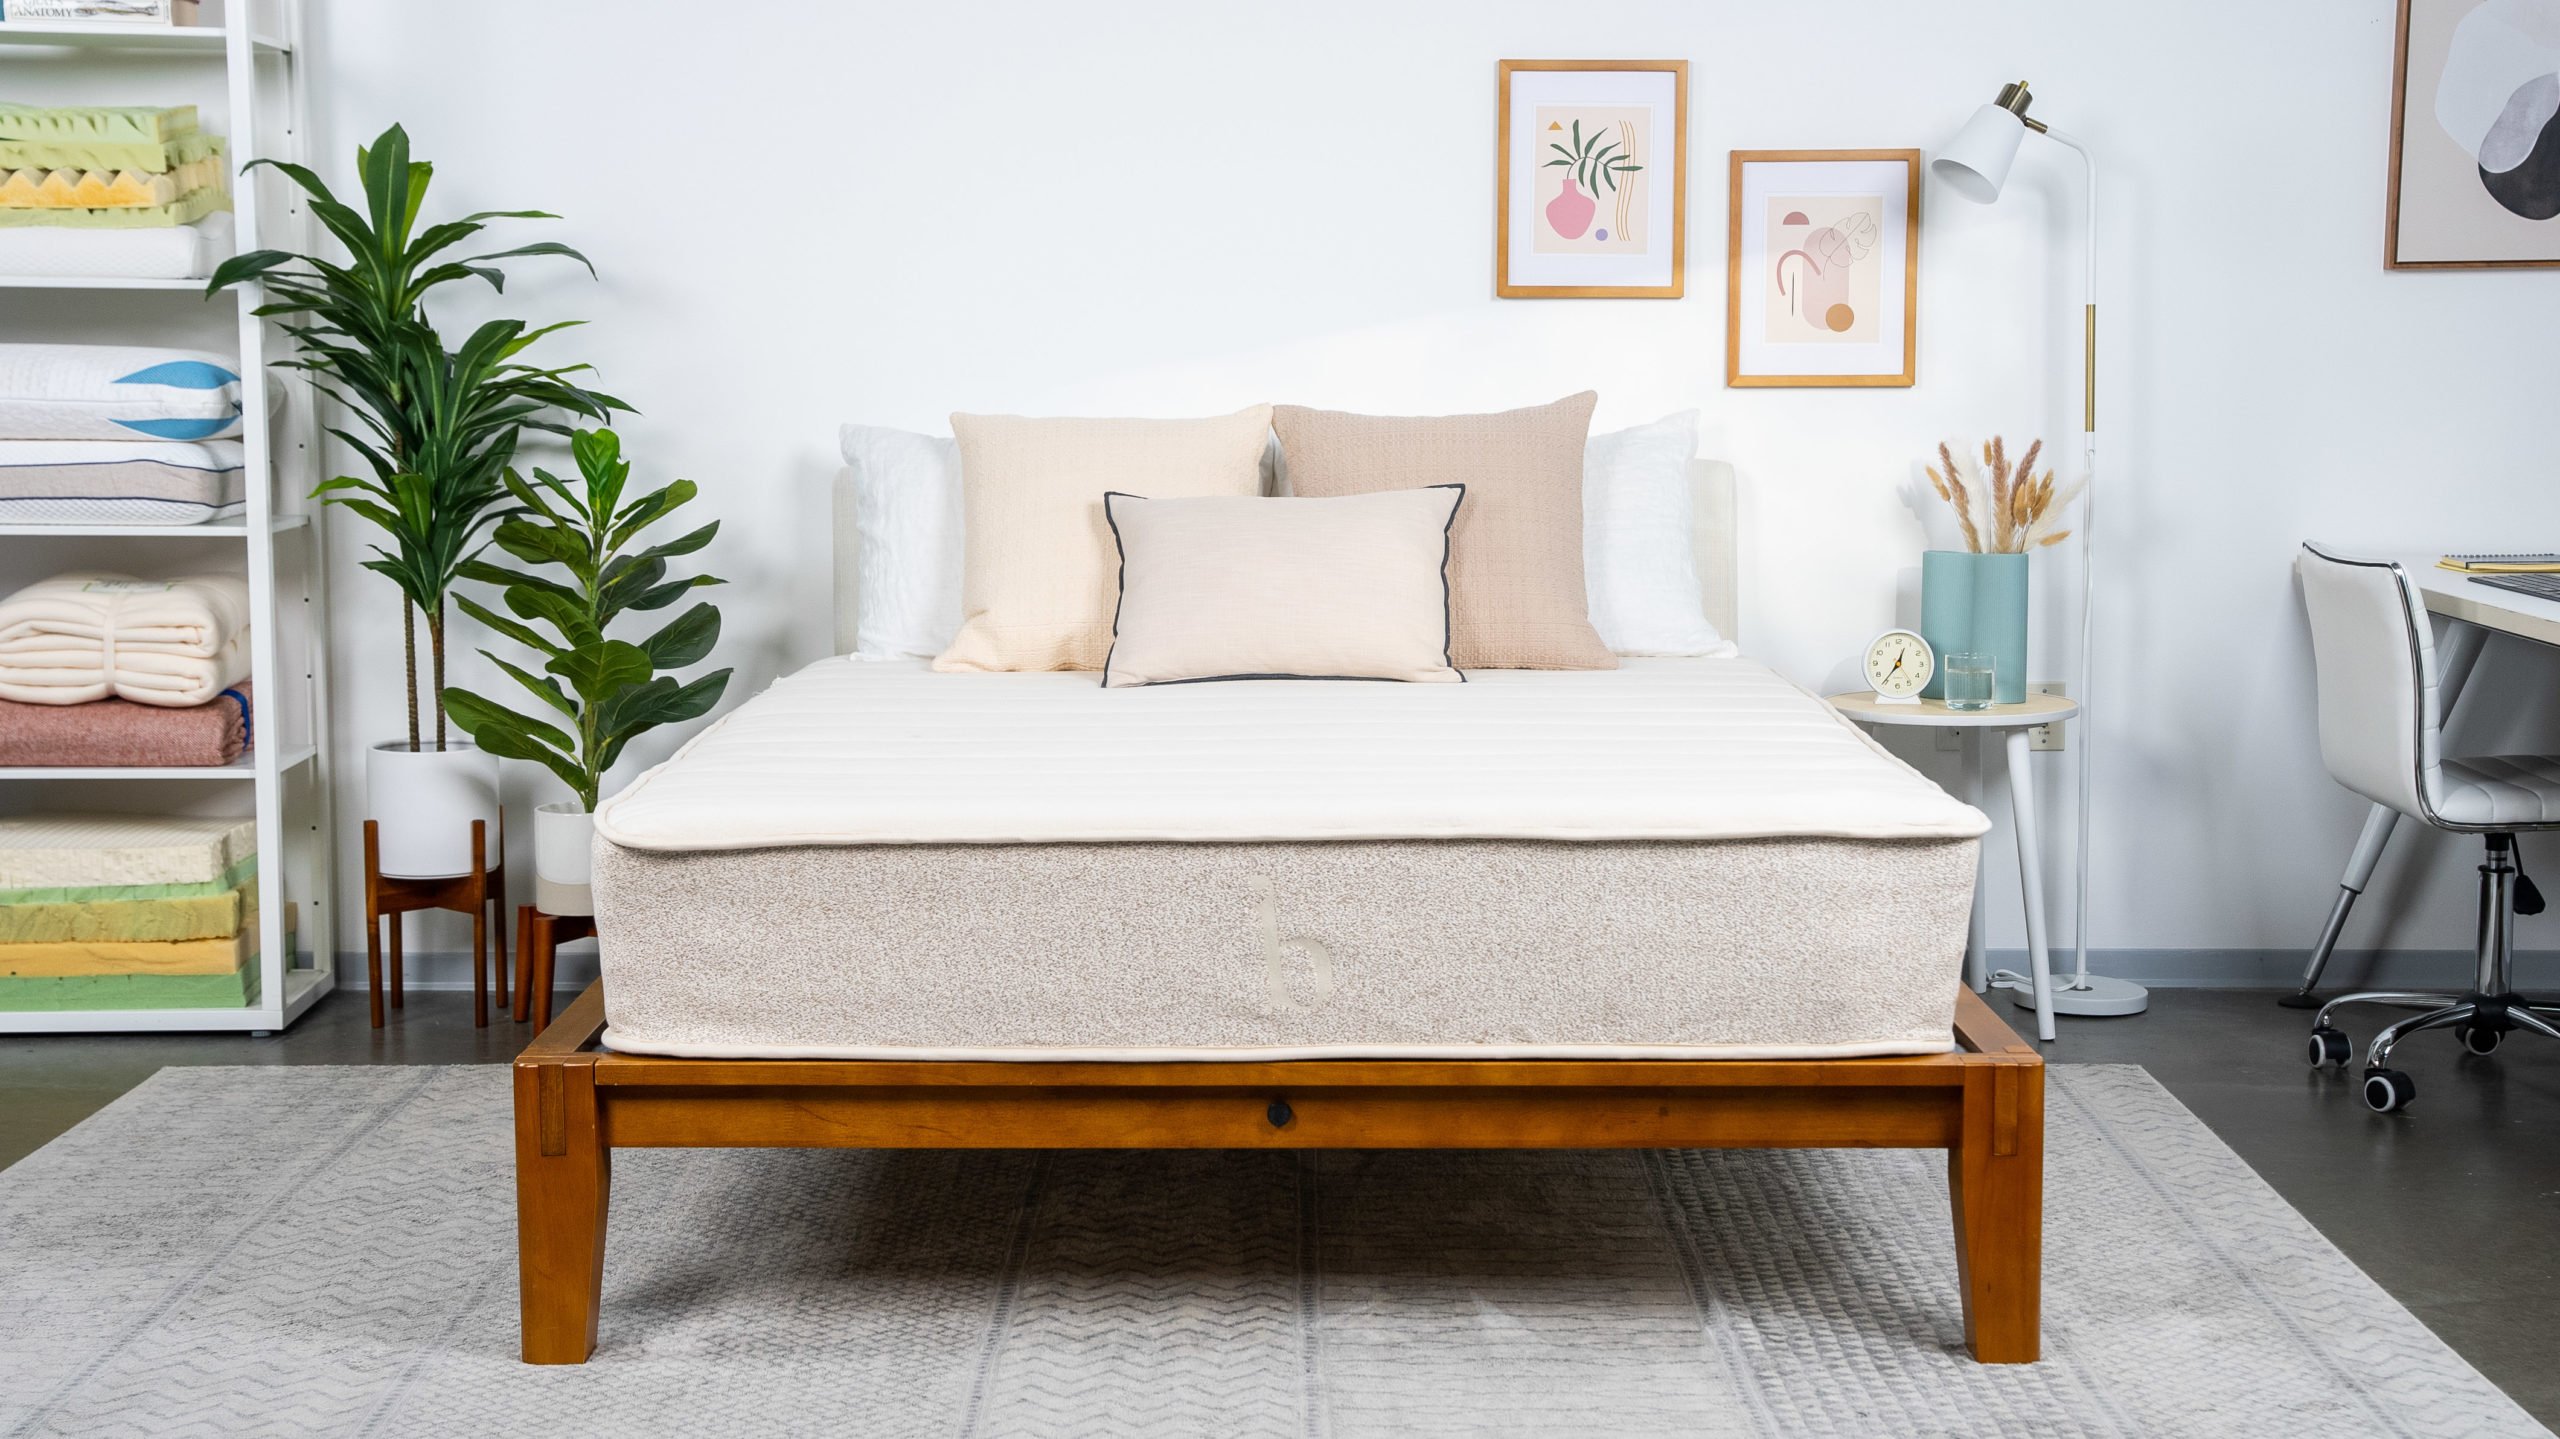 birch natural mattress reviews